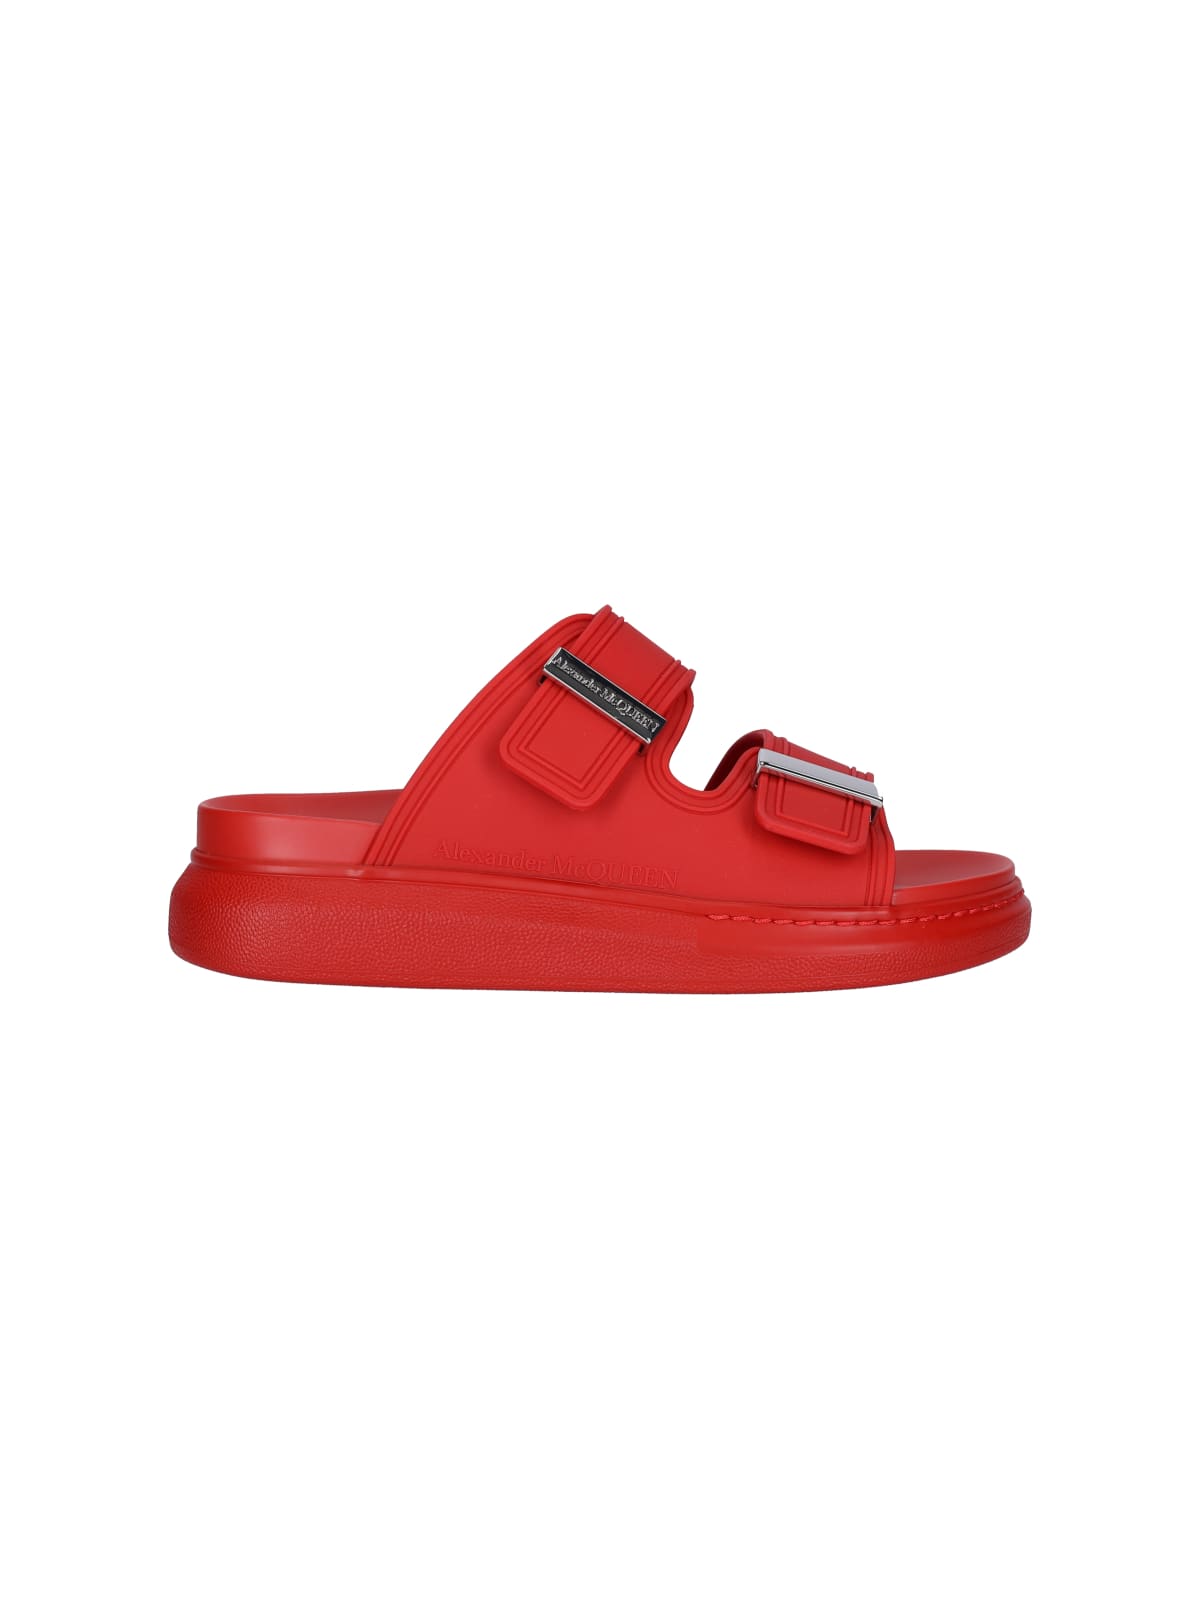 alexander mcqueen shoes red